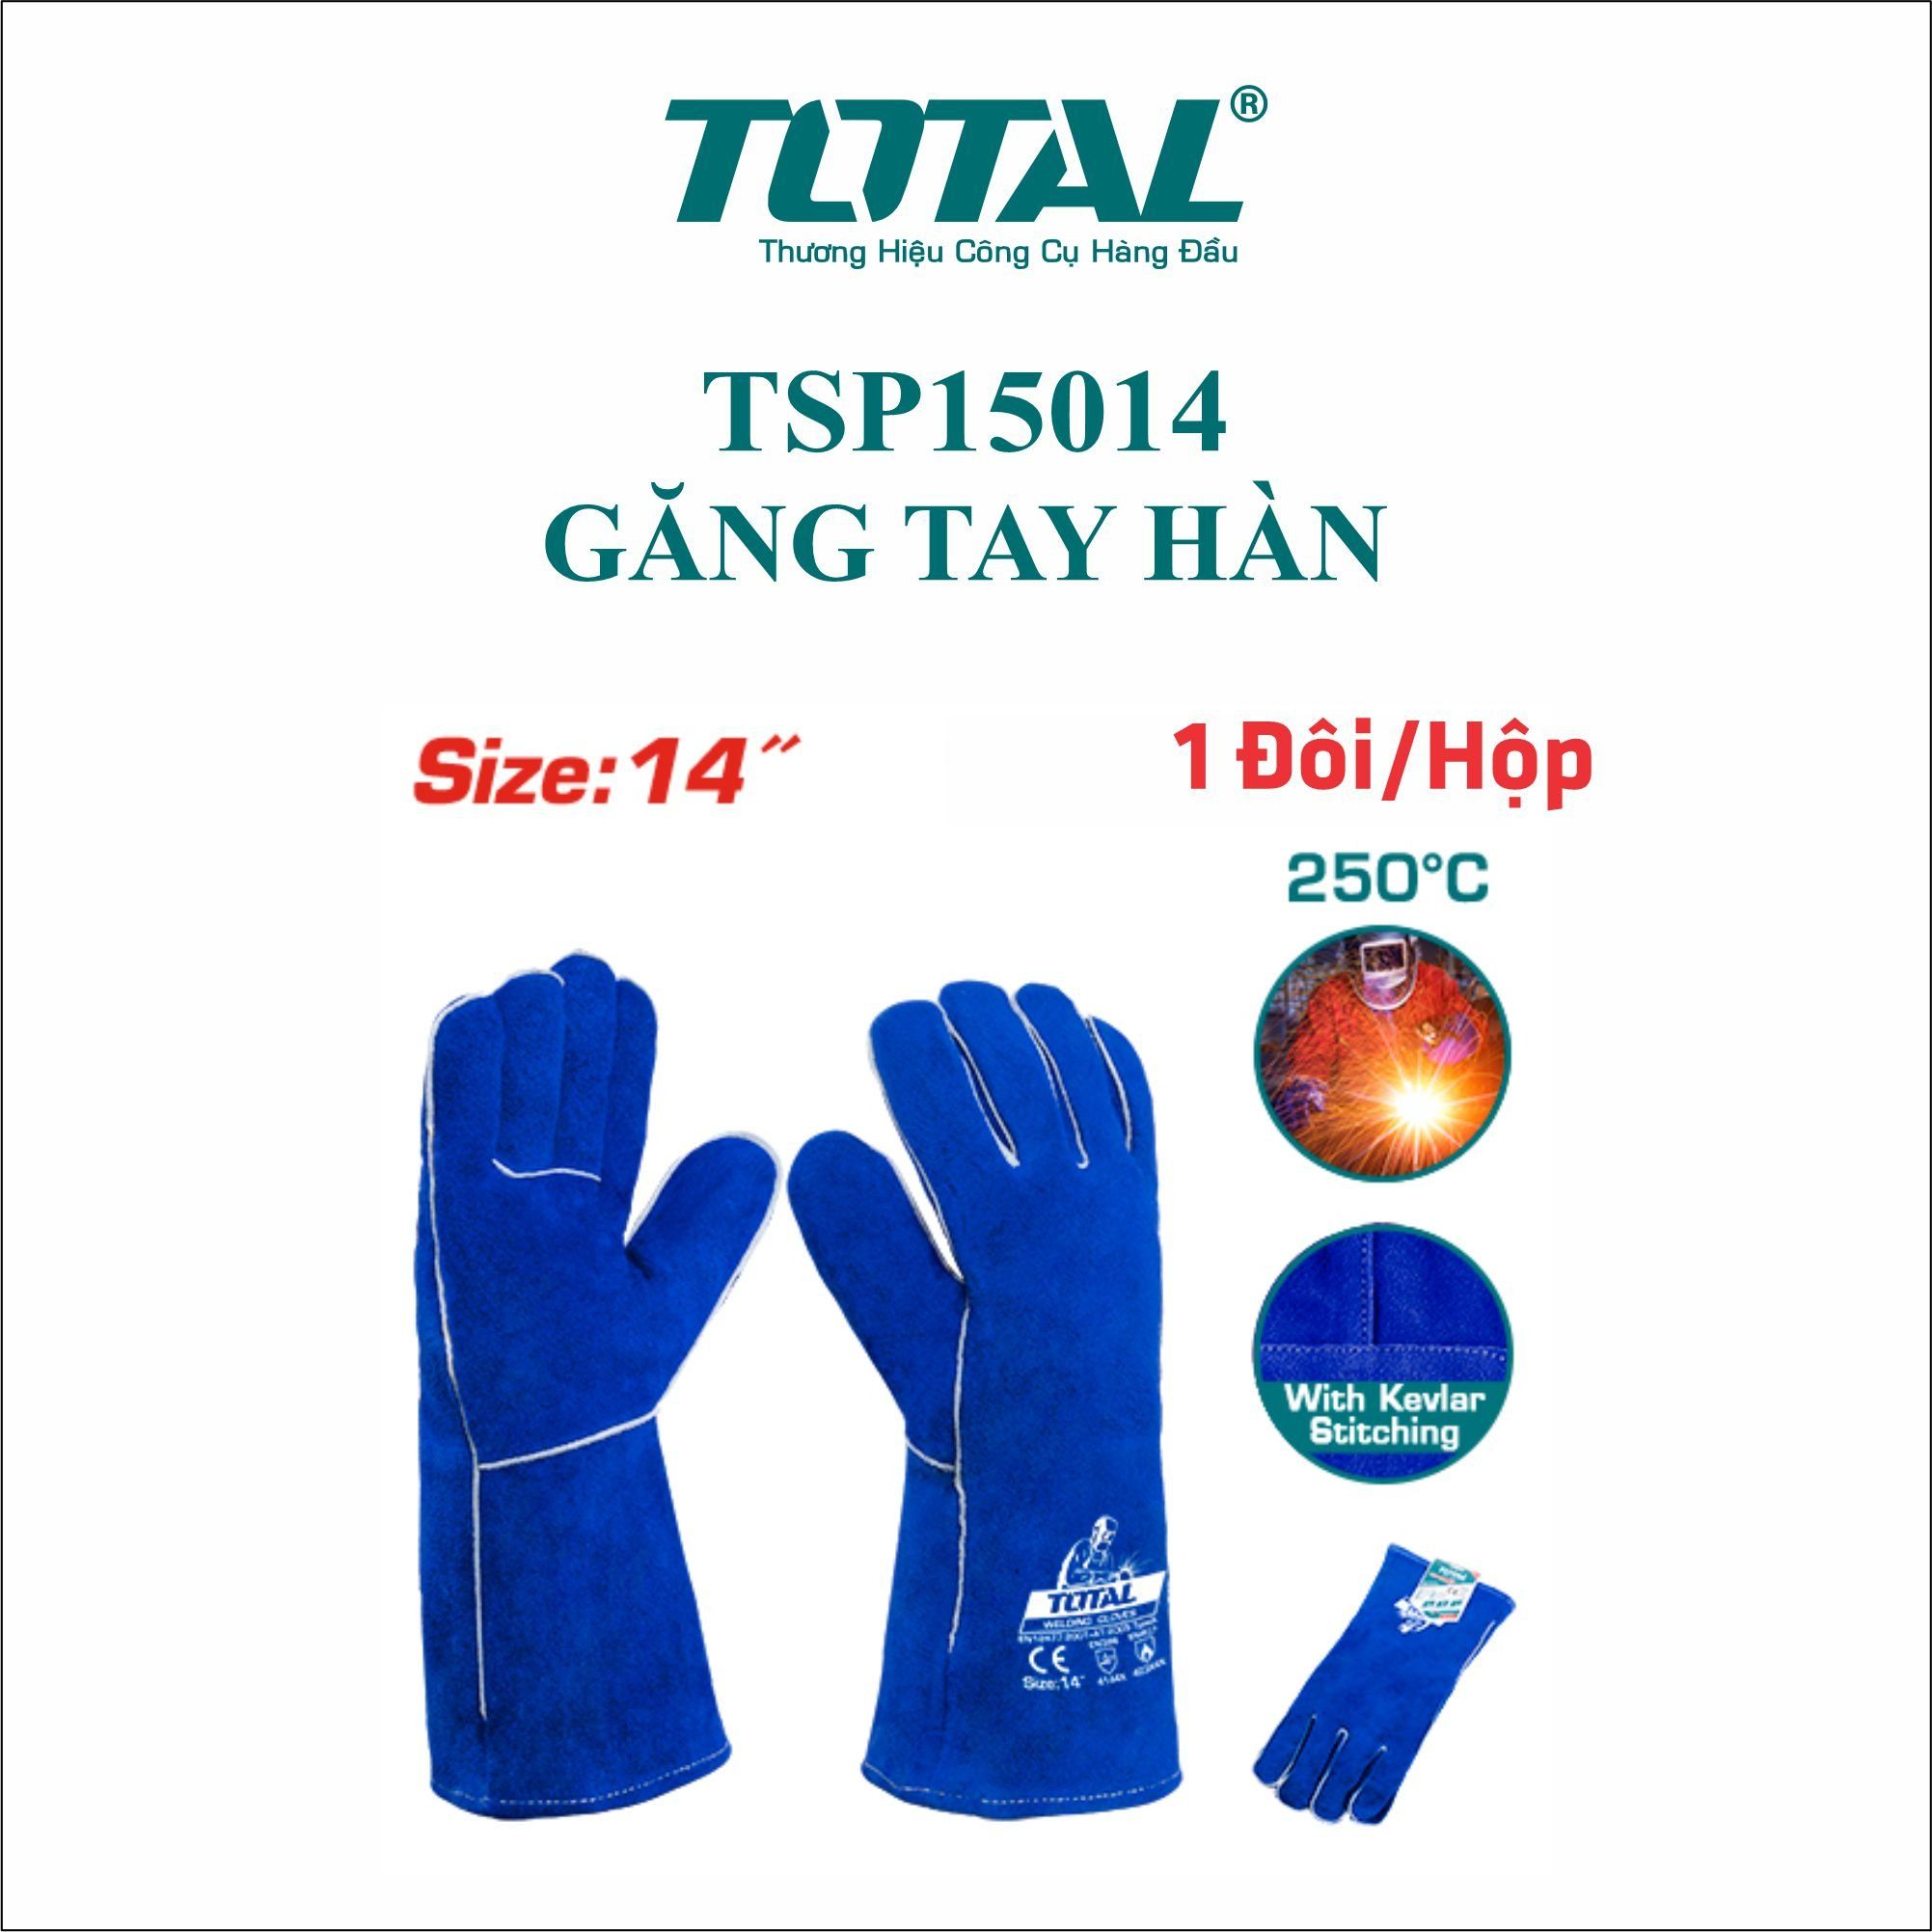  Găng tay hàn Total TSP15014 